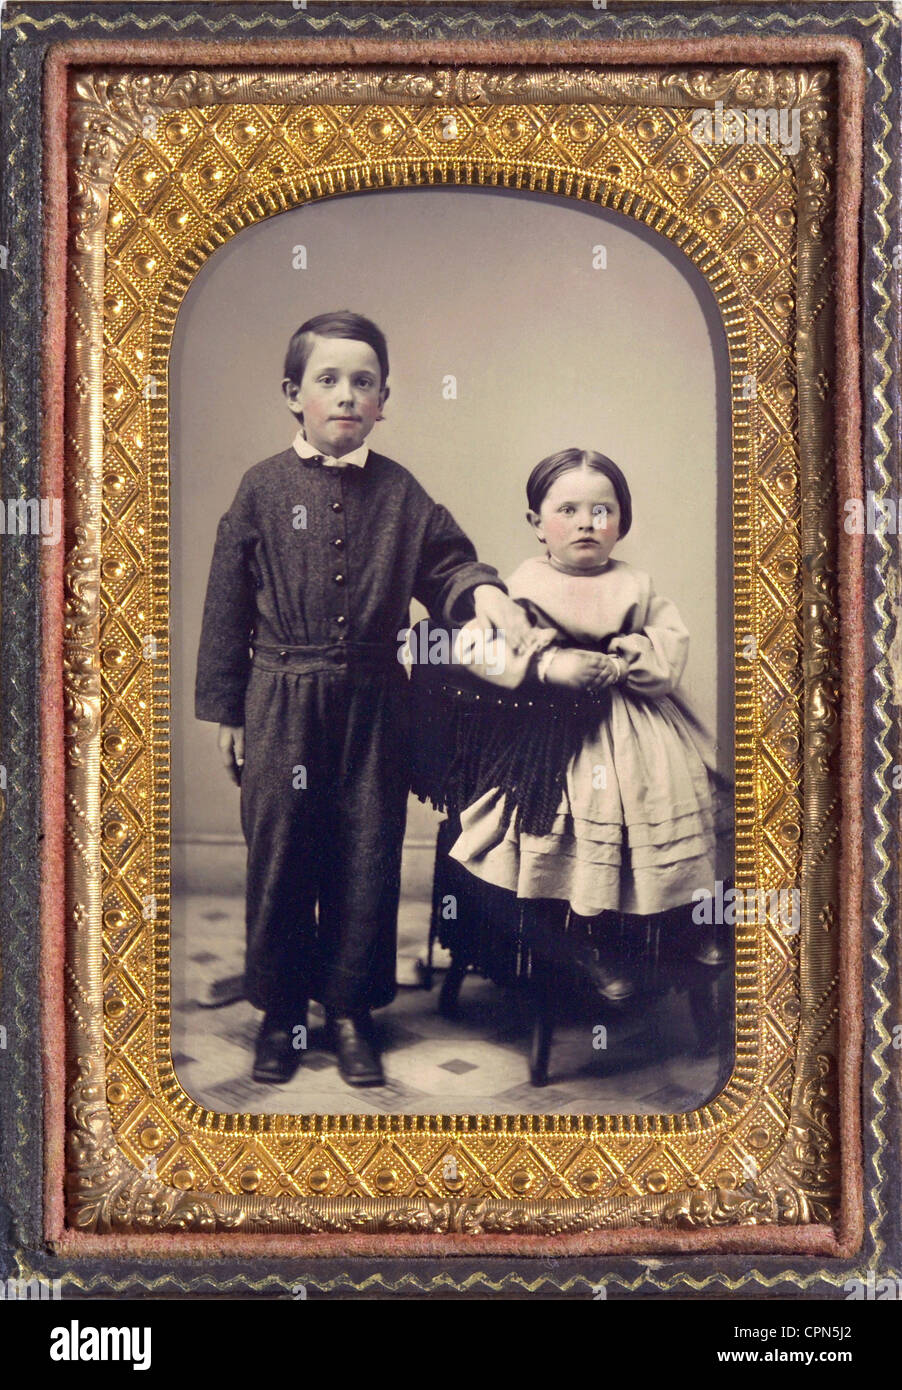 Personnes, enfants, frère et sœur, couleur de couleur, Allemagne, vers 1870, droits additionnels-Clearences-non disponible Banque D'Images